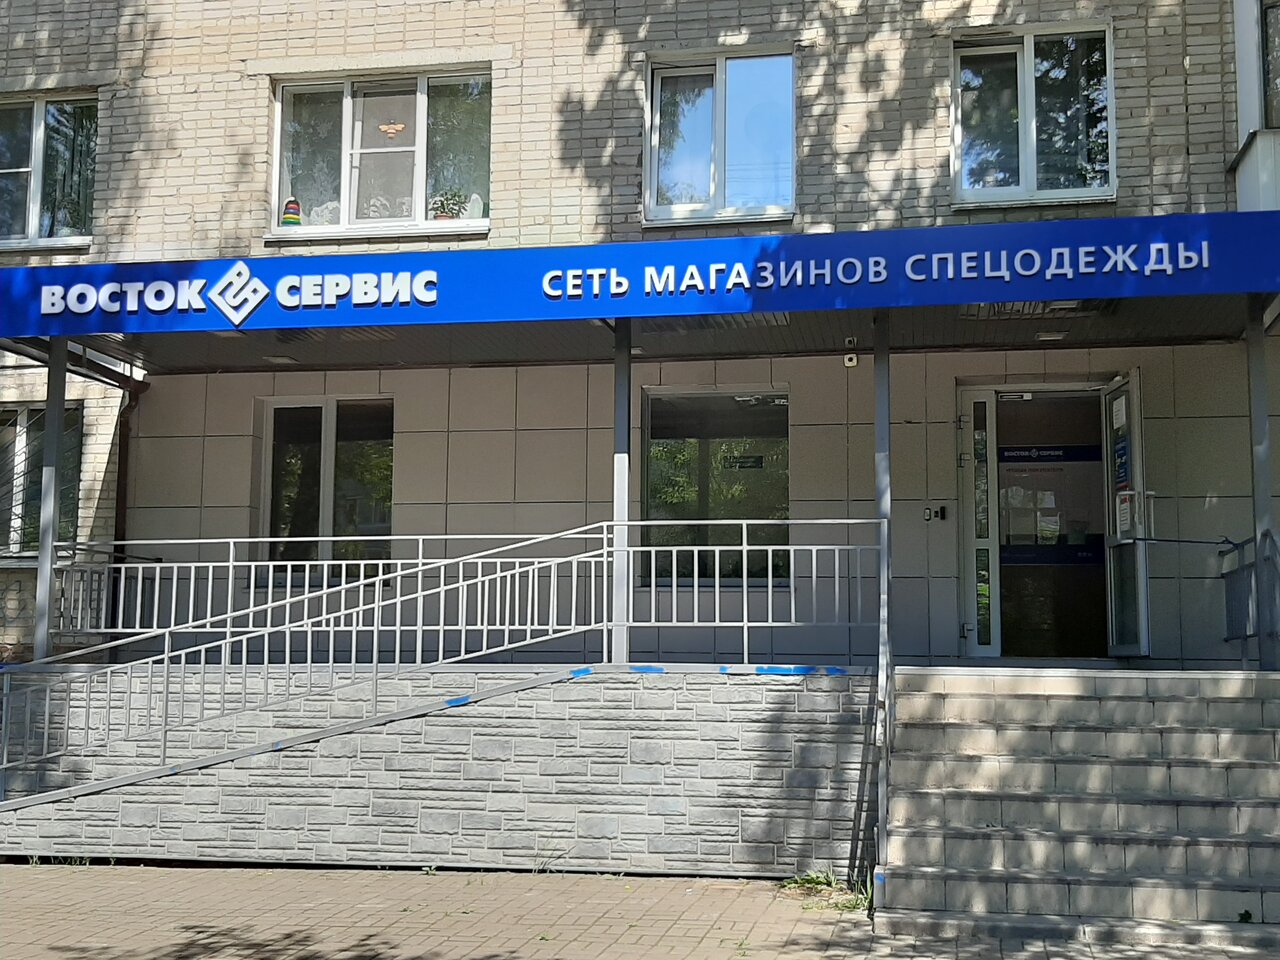 Вход в магазин спецодежды "Восток-Сервис" на Рыленкова в Смоленске